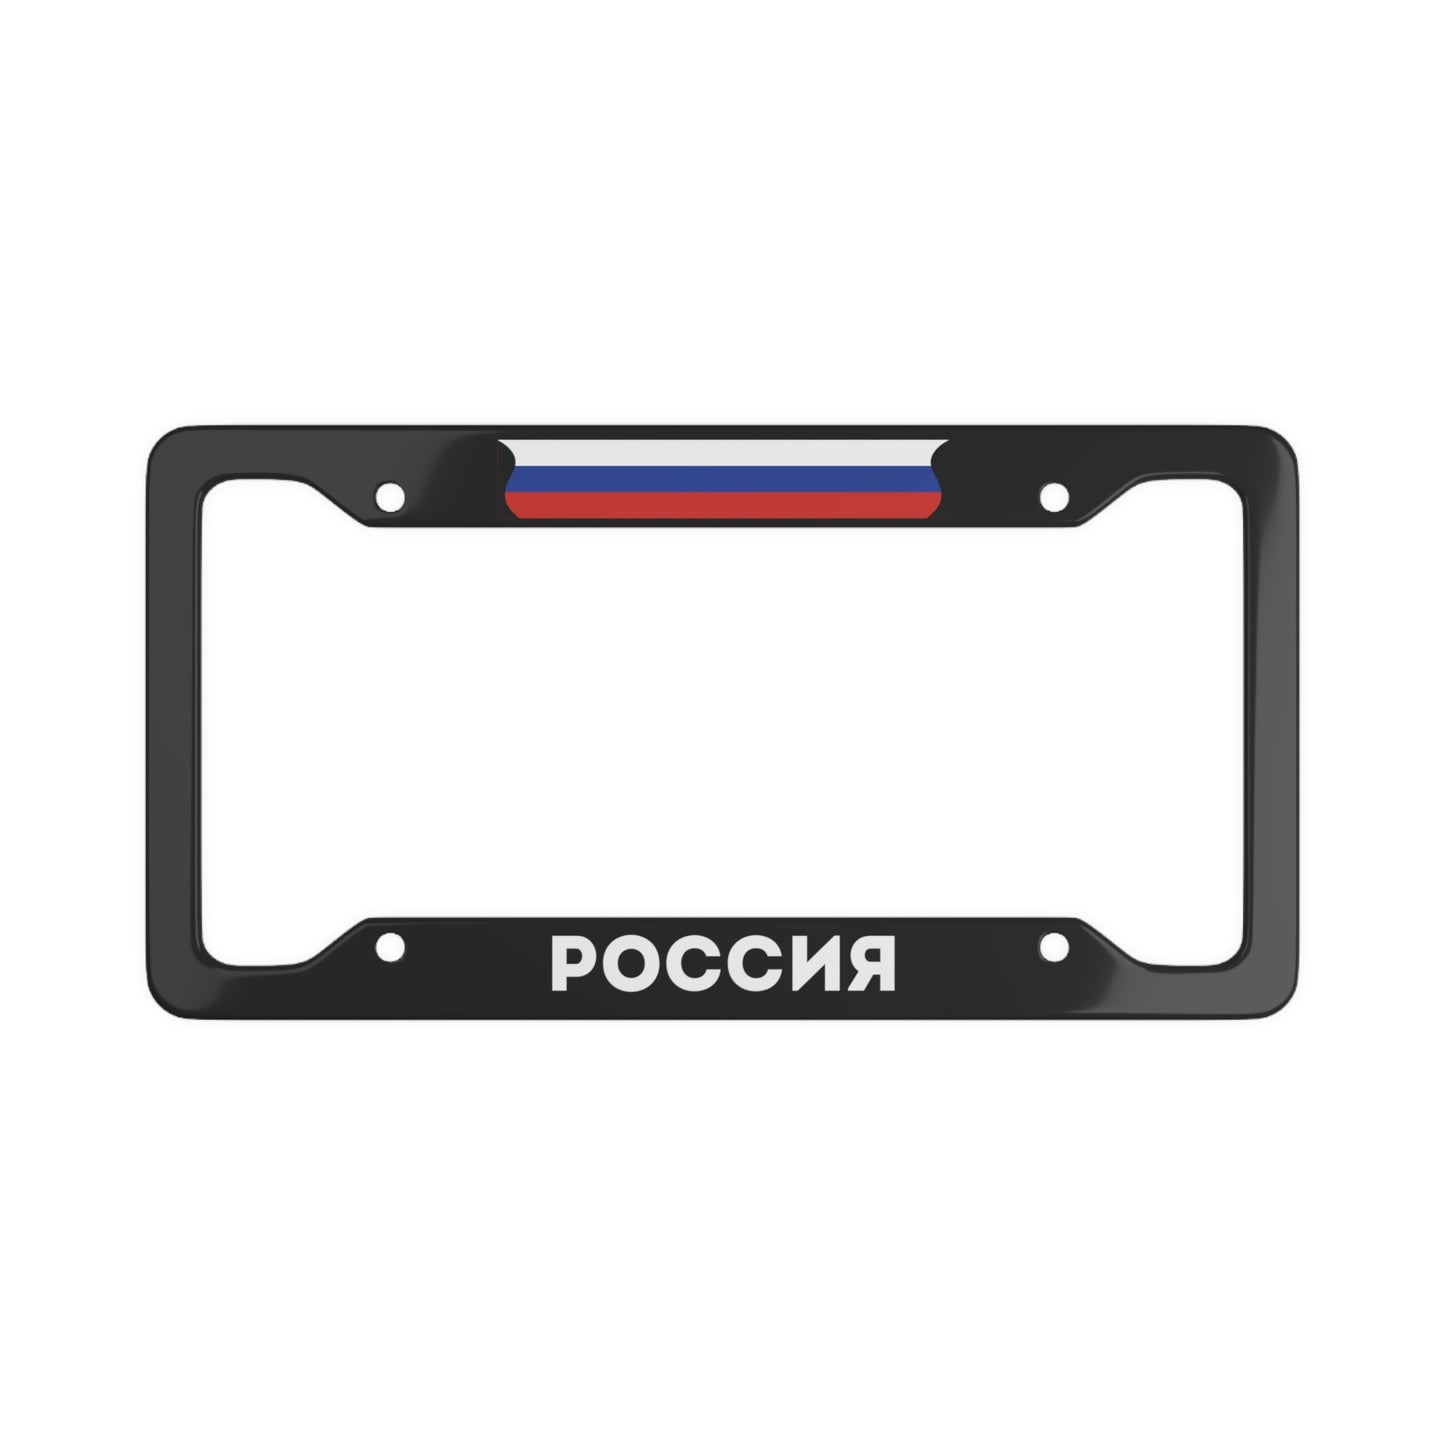 Россия License Plate Frame